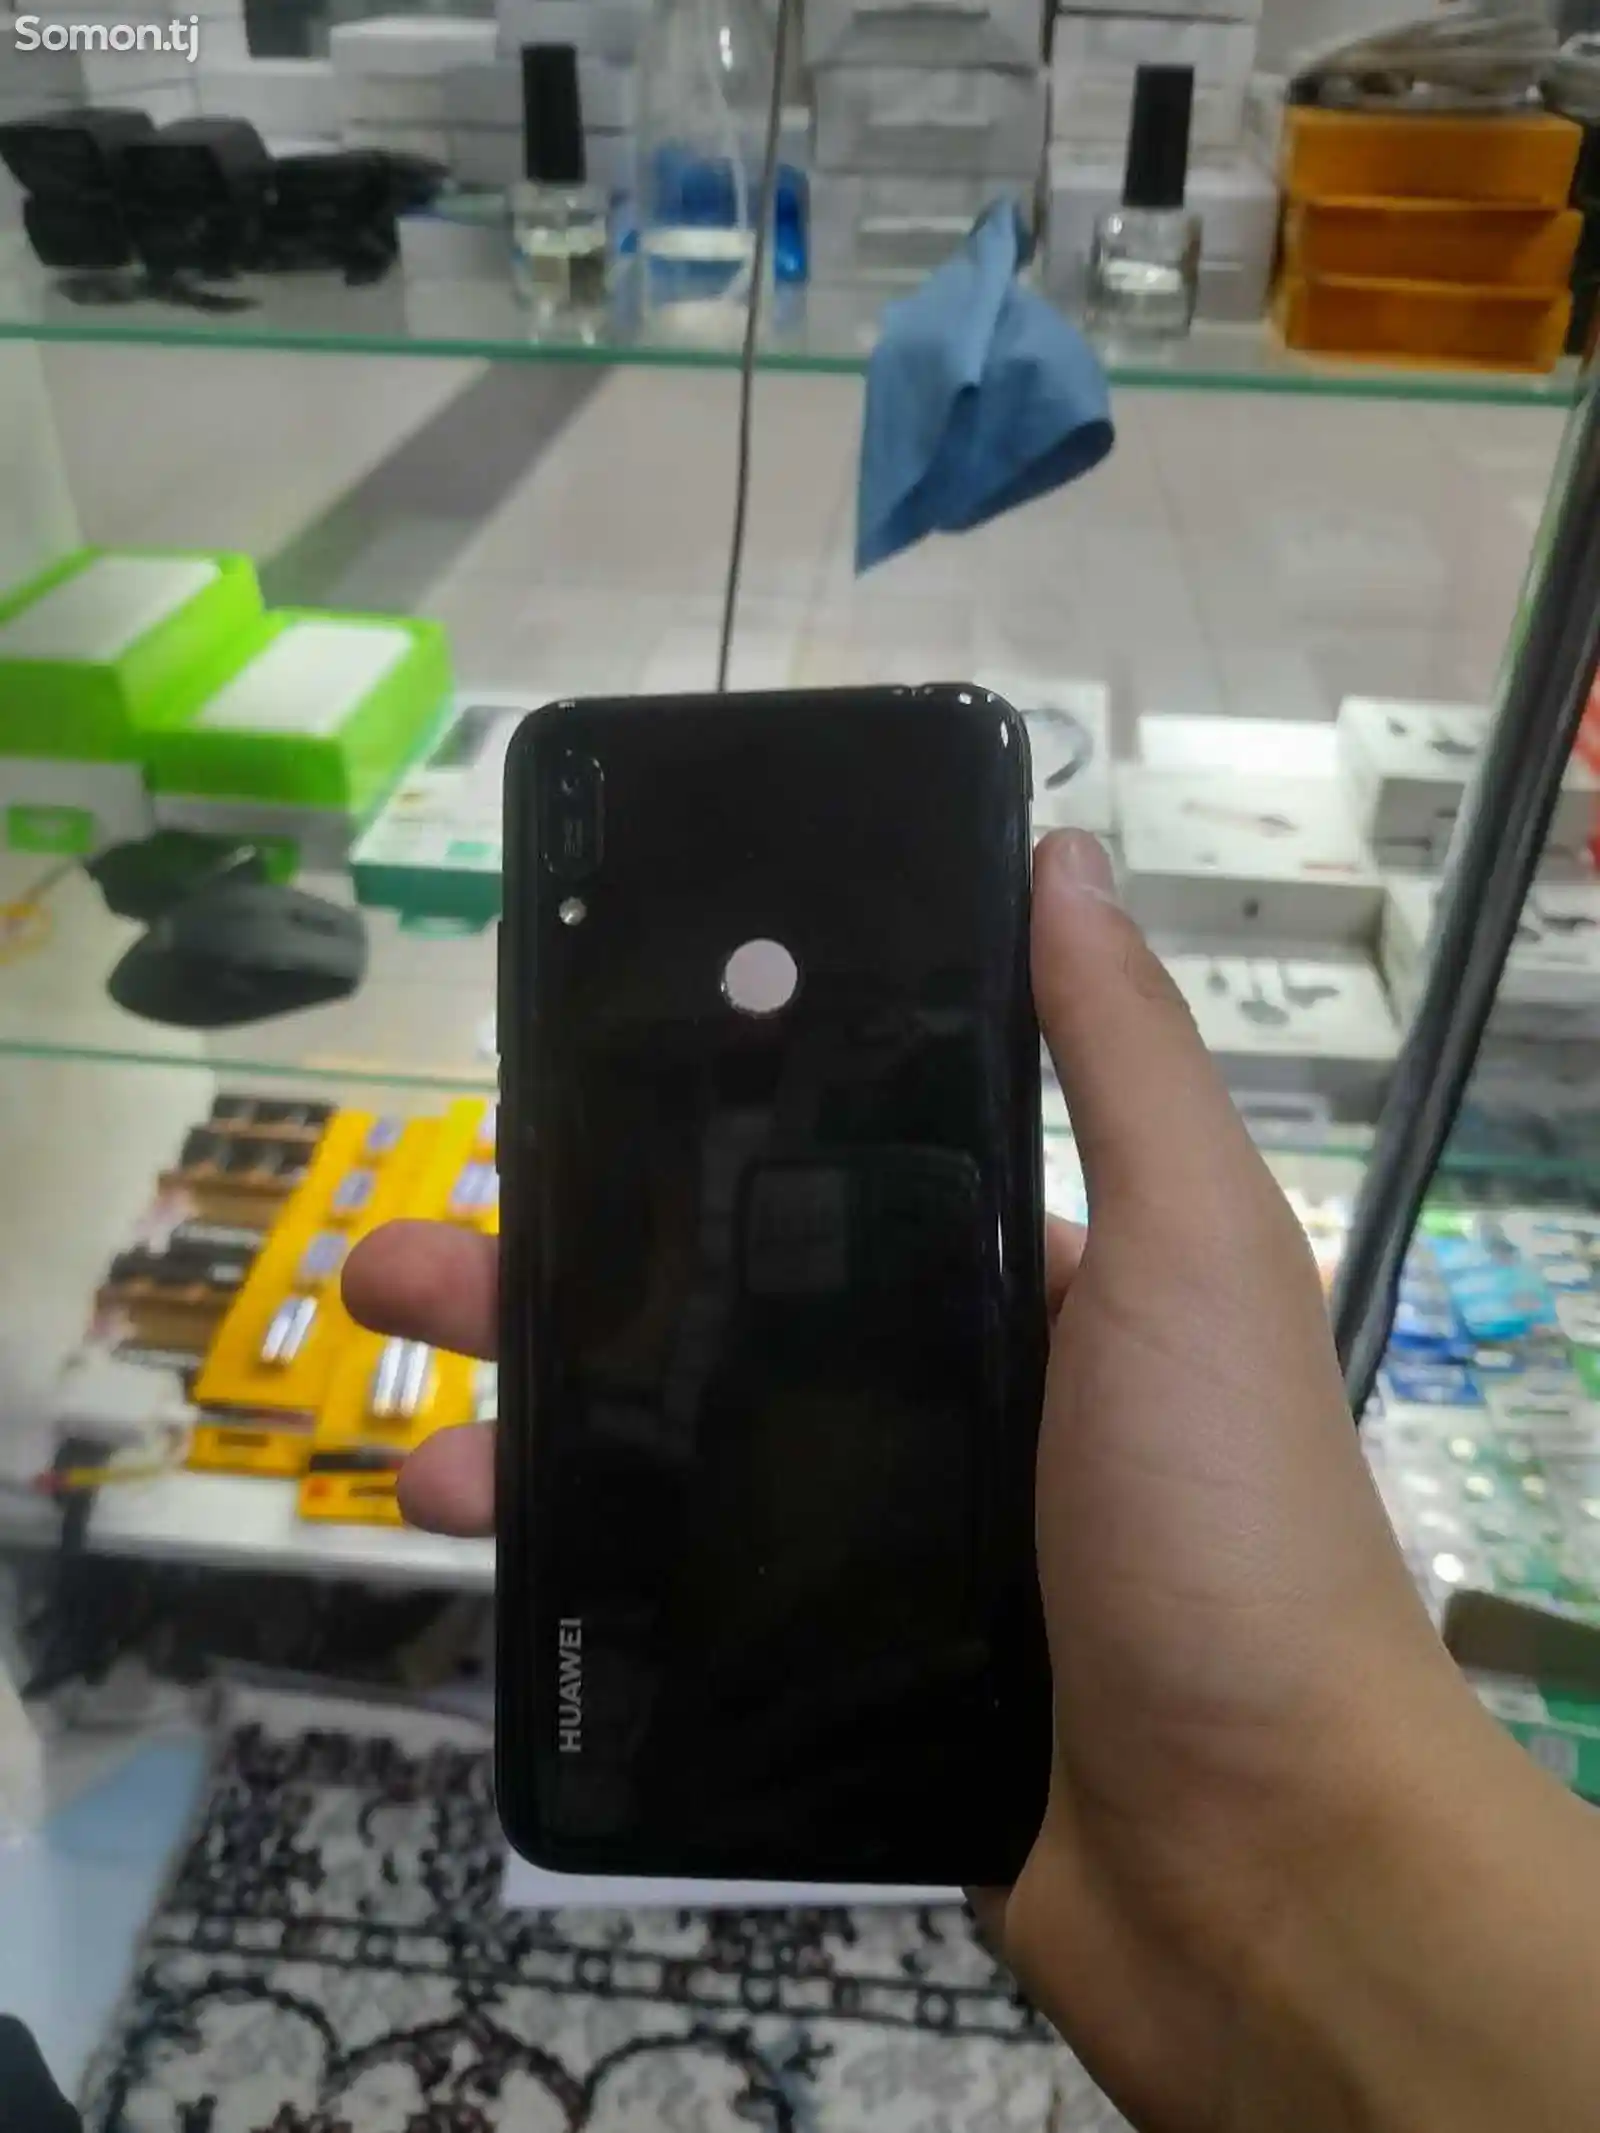 Телефон Huawei-2